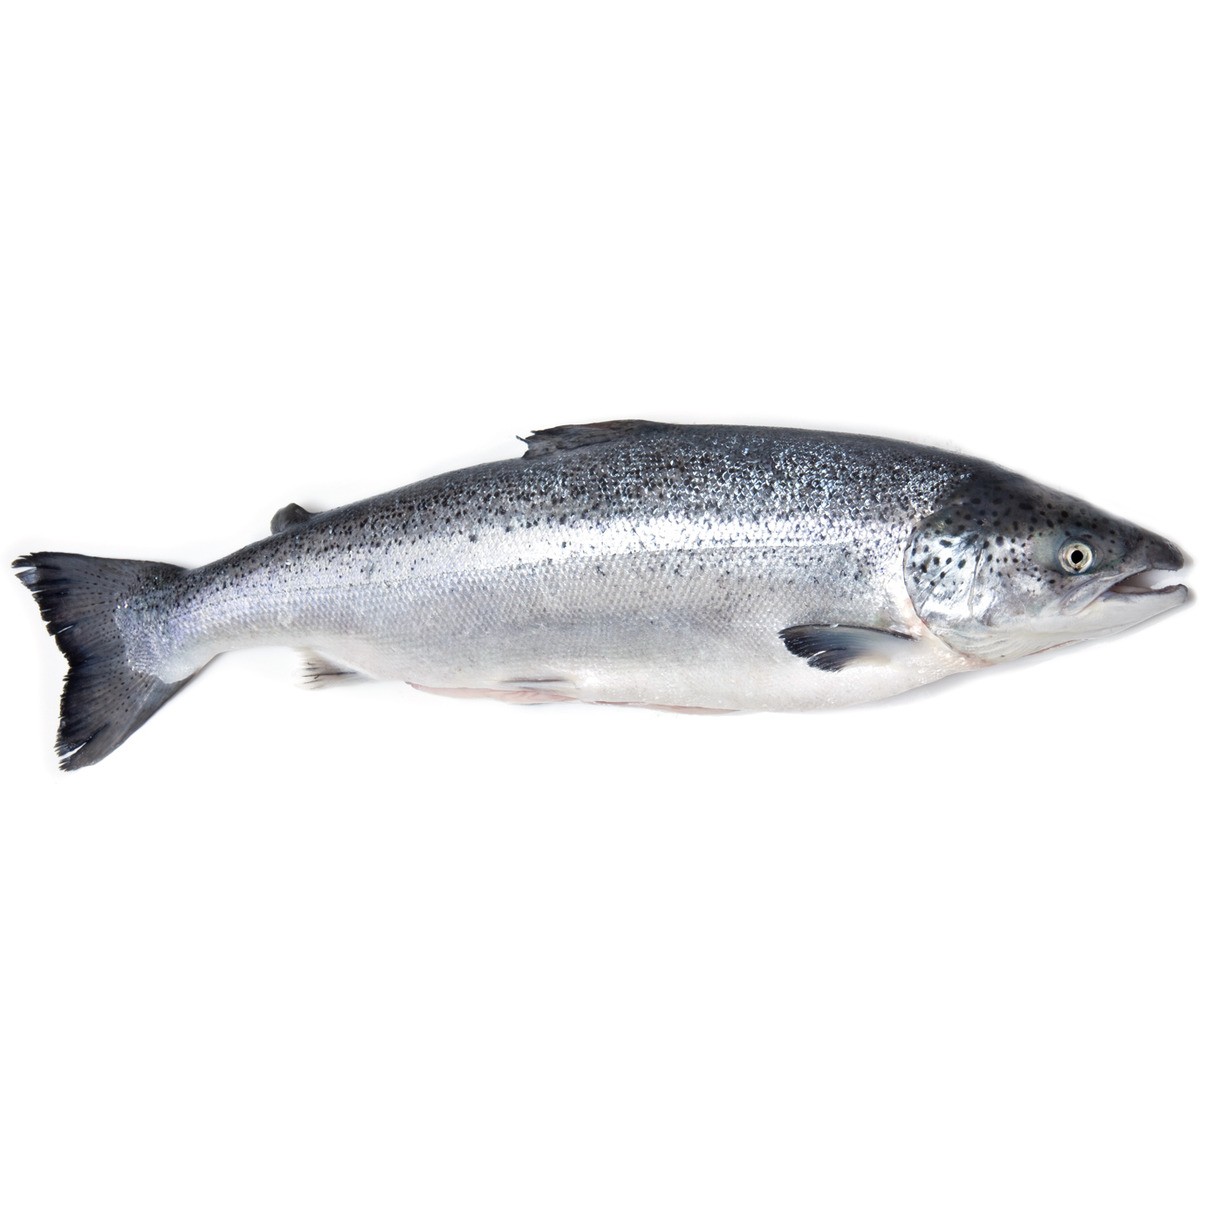 Океаническая форель (Лосось) вылов Норвегия
Целая замороженная рыба семейства лососевых 7-8 килограммов позволяет получить вкусное, в меру сочное диетическое мясо.
При заказе рыбы укажите, какой вид нарезки вам необходим. Так как эта рыба семга замороженная, есть два вида поставки - целая рыба и нарезанная на стейки. По данной цене предлагается целая рыба, в комплекте с головой и суповым набором.
Хранить в морозильной камере.